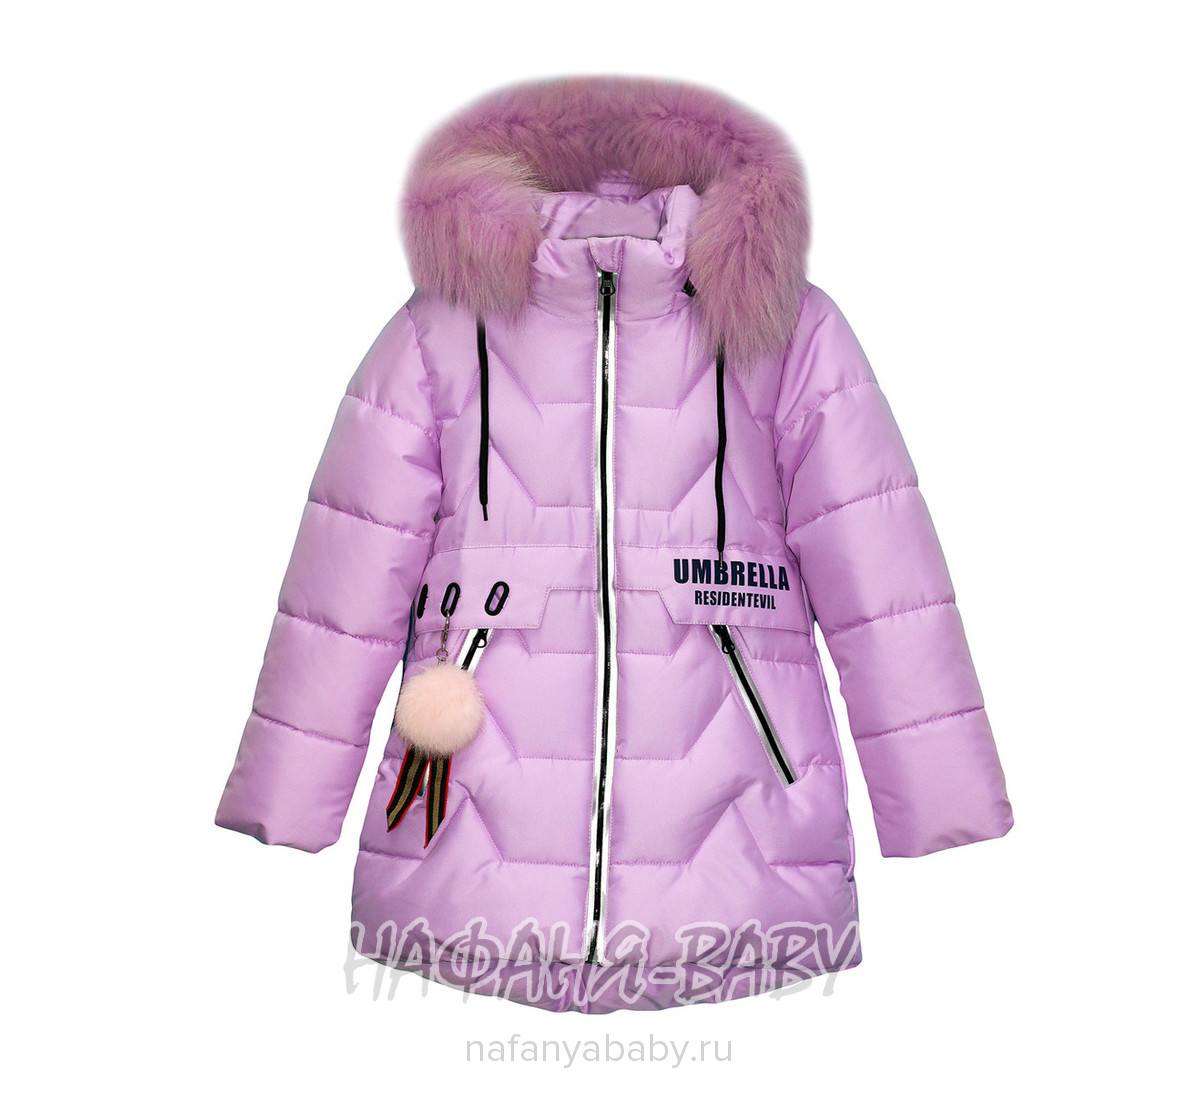 Зимняя куртка удлиненная DELFIN-FREE, купить в интернет магазине Нафаня. арт: 18101.